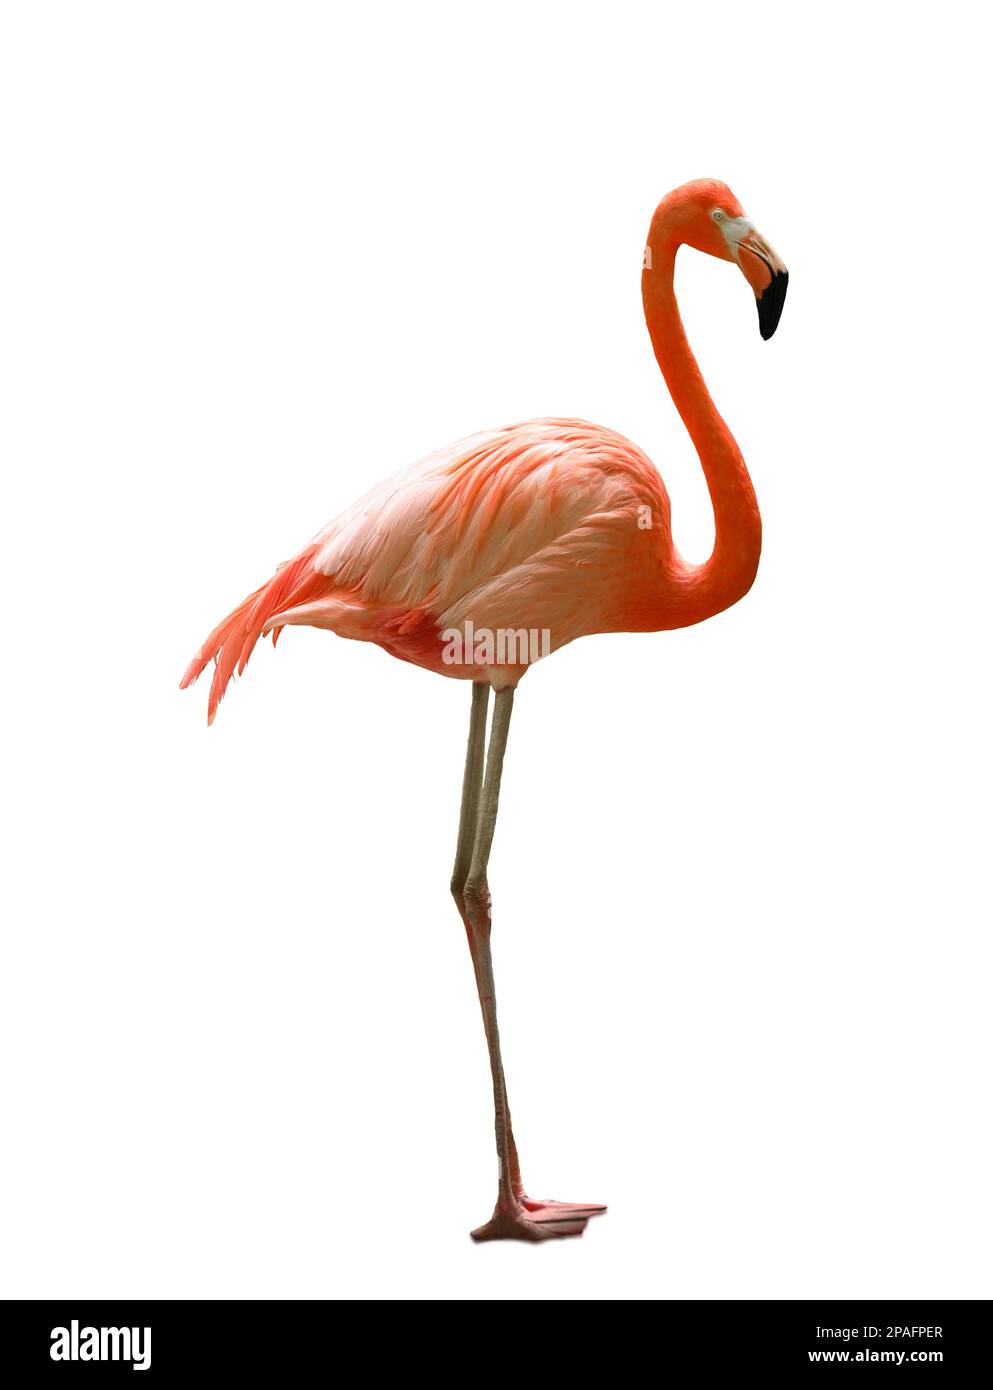 Beautiful flamingo on white background. Wading bird Stock Photo